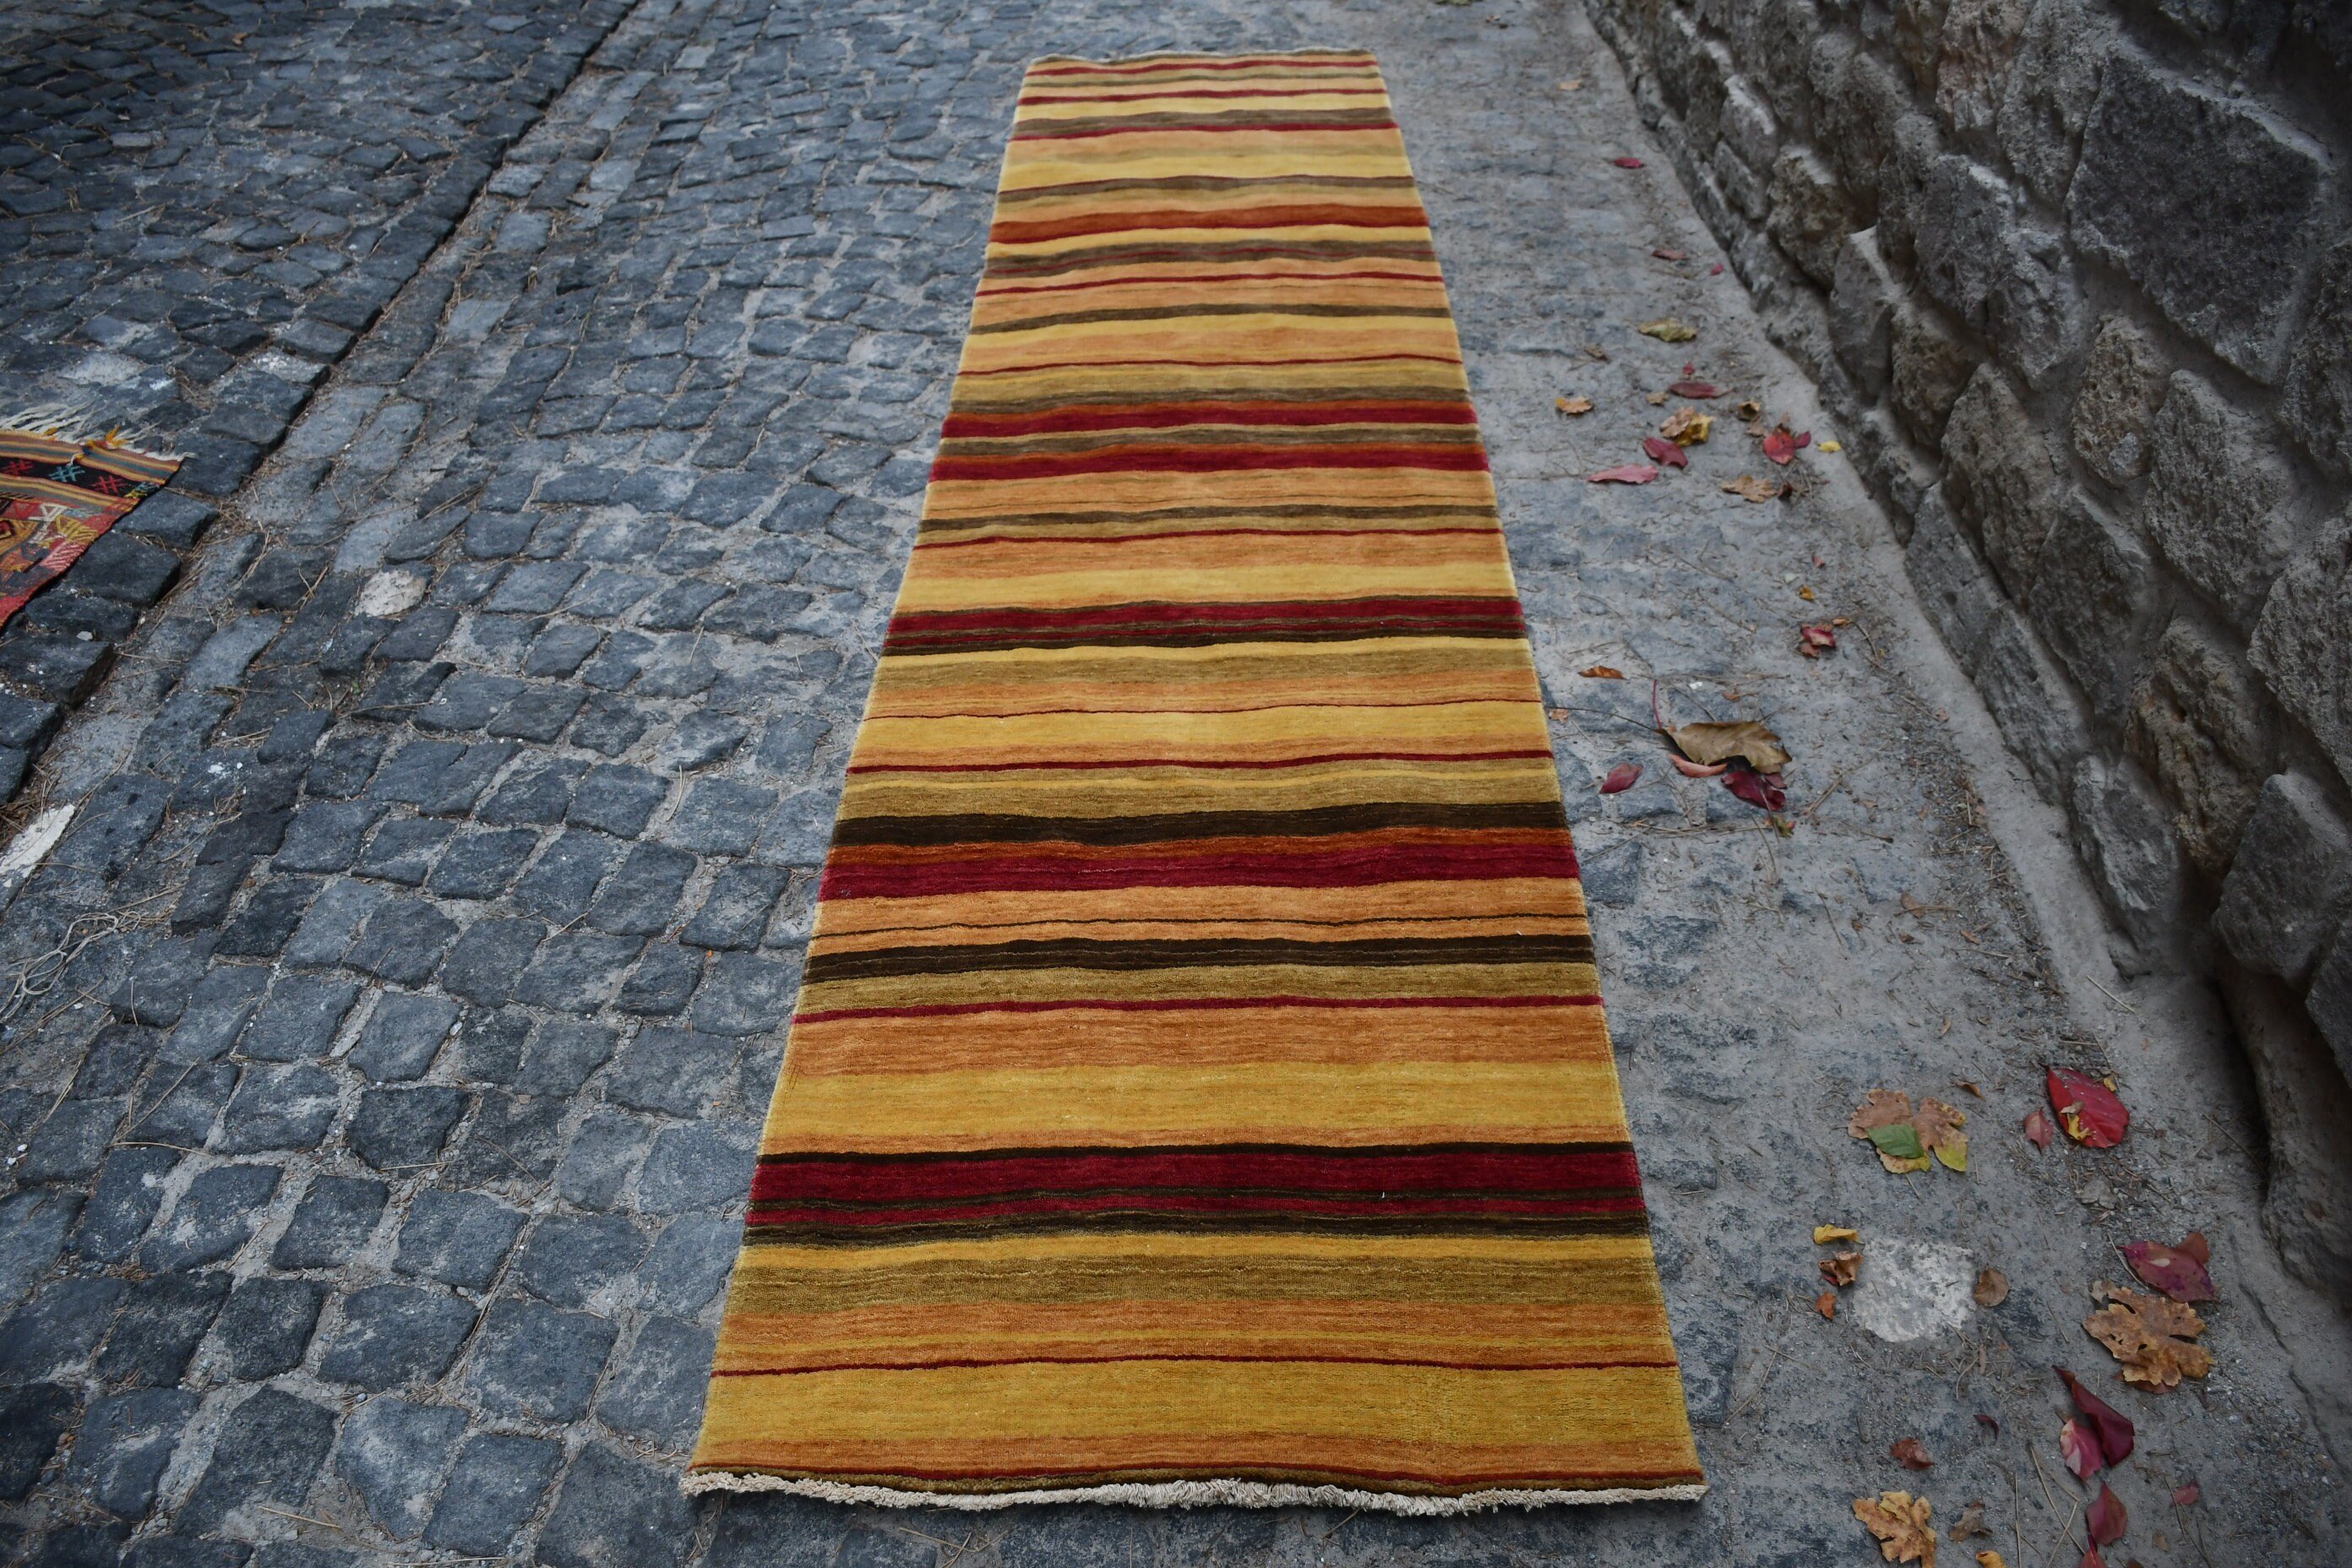 Hallway Rug, Turkish Rug, Vintage Rug, Rugs for Runner, Red Cool Rug, Stair Rug, Oriental Rugs, Bedroom Rug, 2.6x11.3 ft Runner Rugs